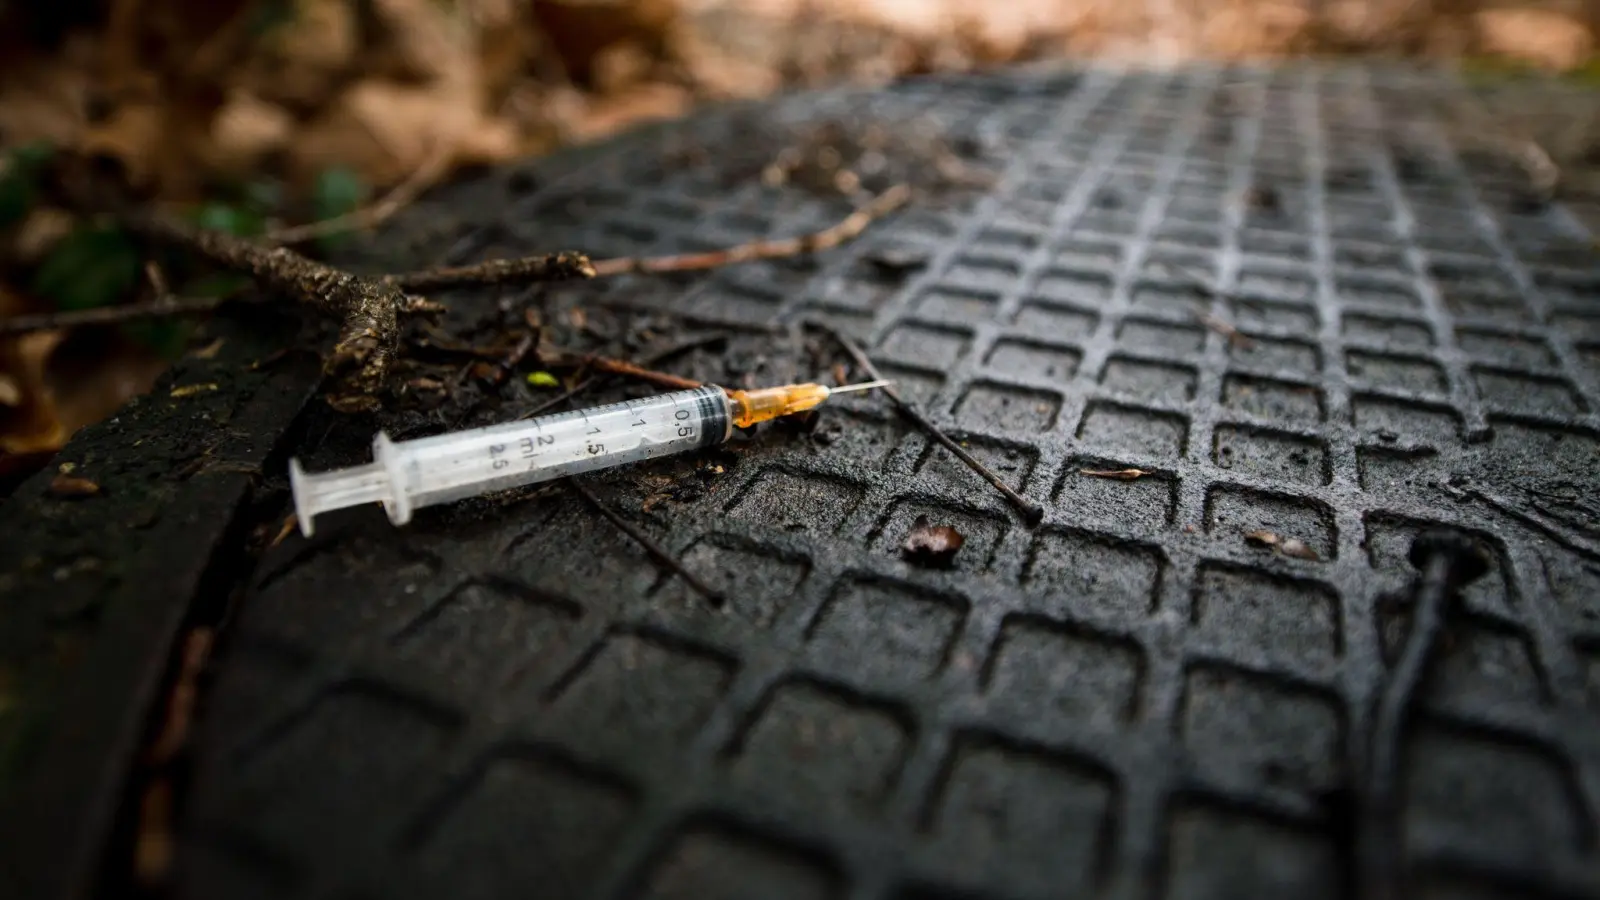 Eine benutzte Spritze, die üblicherweise zum Spritzen von Heroin genutzt wird. (Bild: Felix Zahn/dpa)